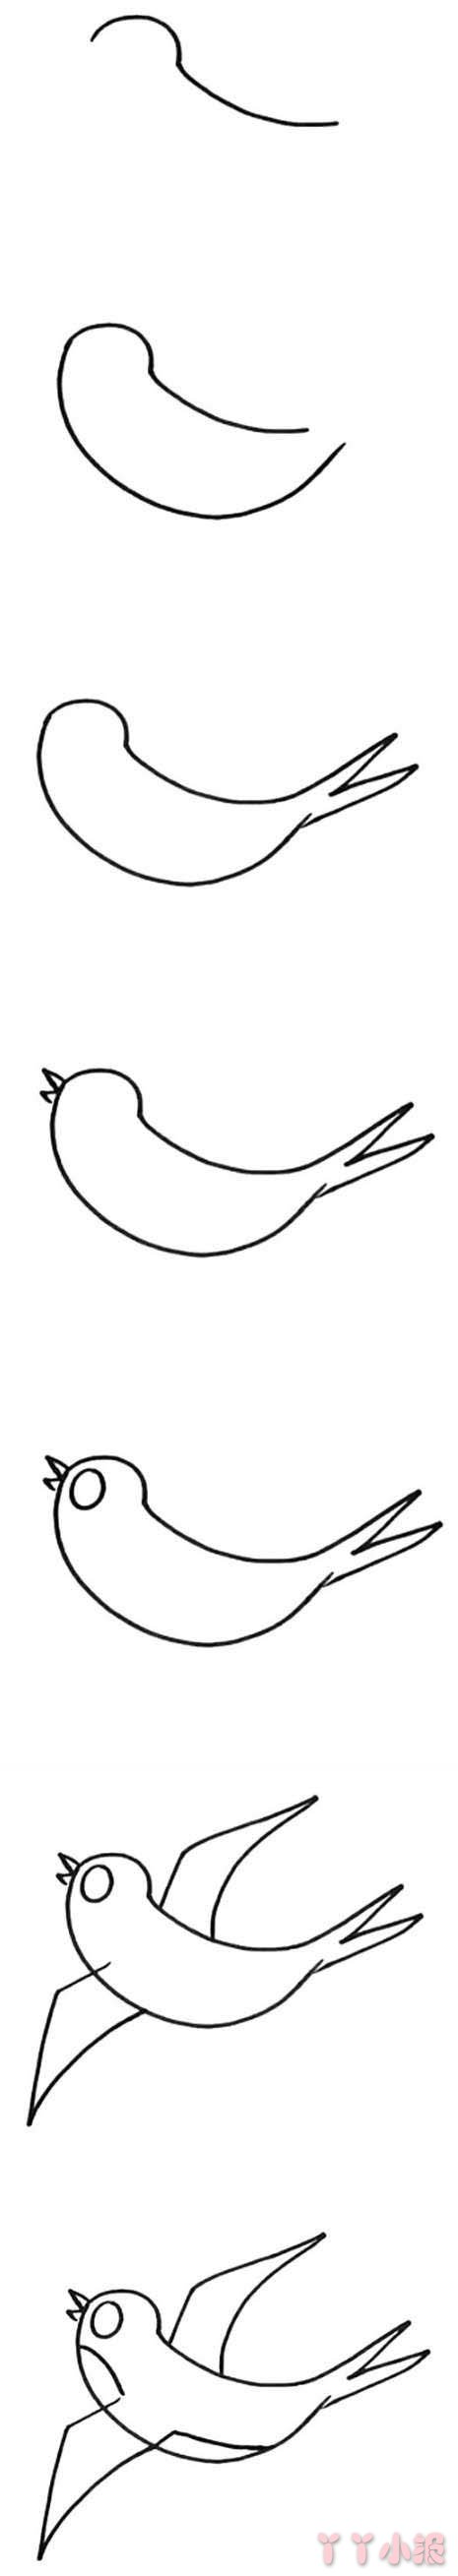 小燕子简笔画图片 燕子怎么画涂色简单漂亮